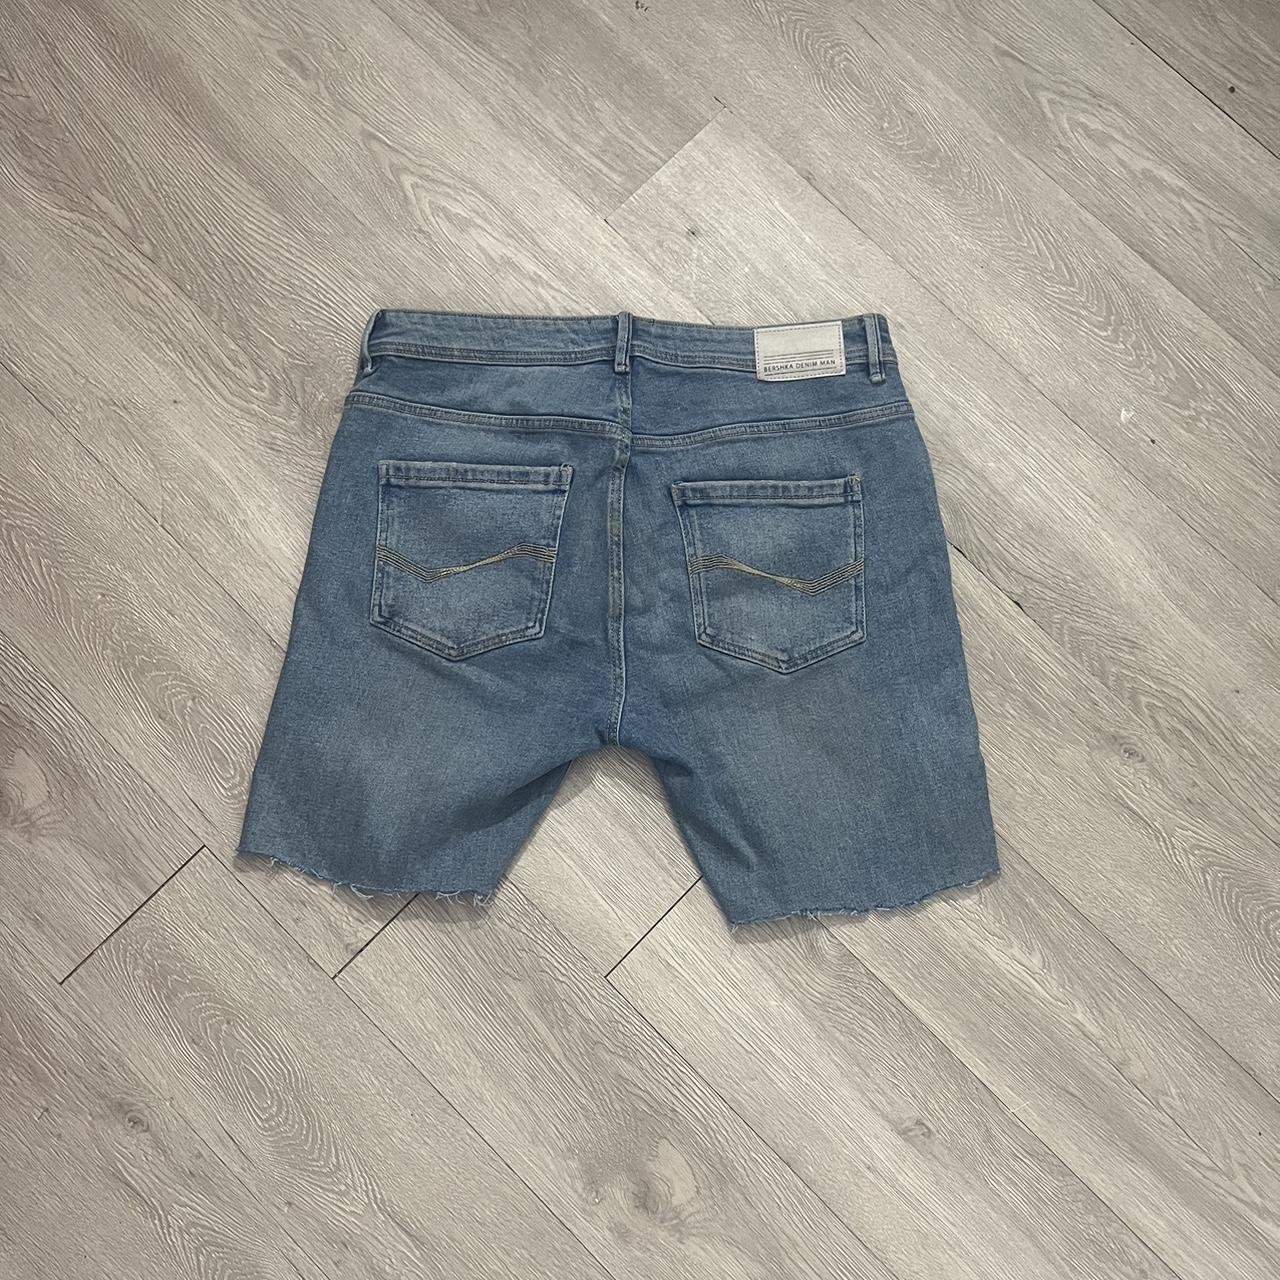 Bershka Pant Jorts - Cut from full length jeans -... - Depop